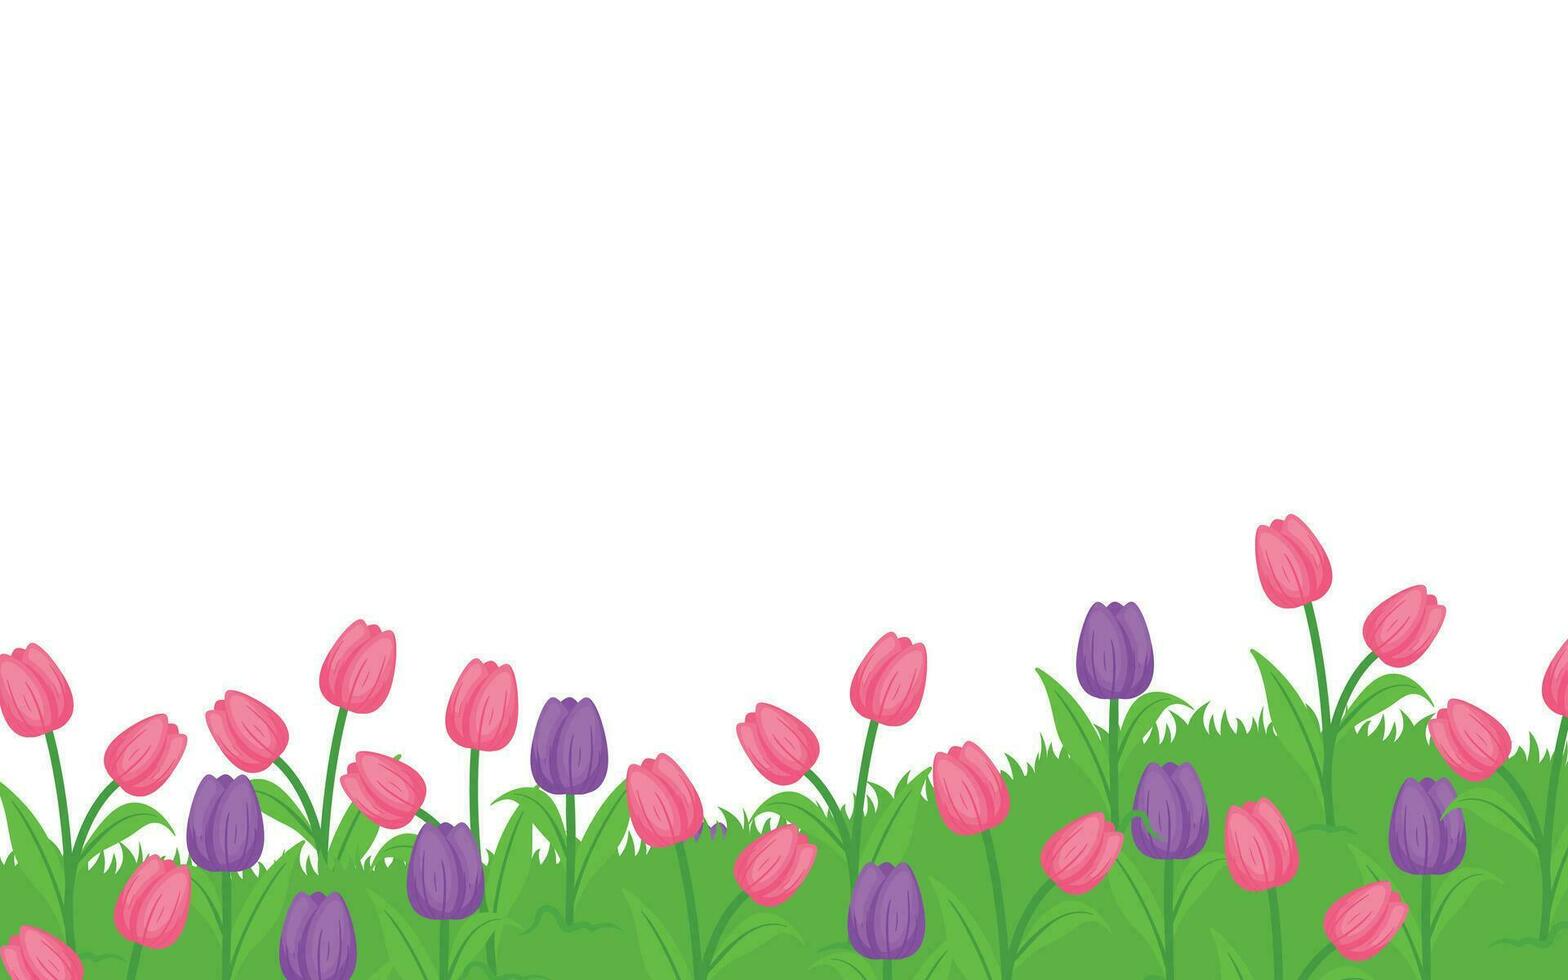 gras met bloem bodem grens voor achtergrond element decoratie vector illustratie